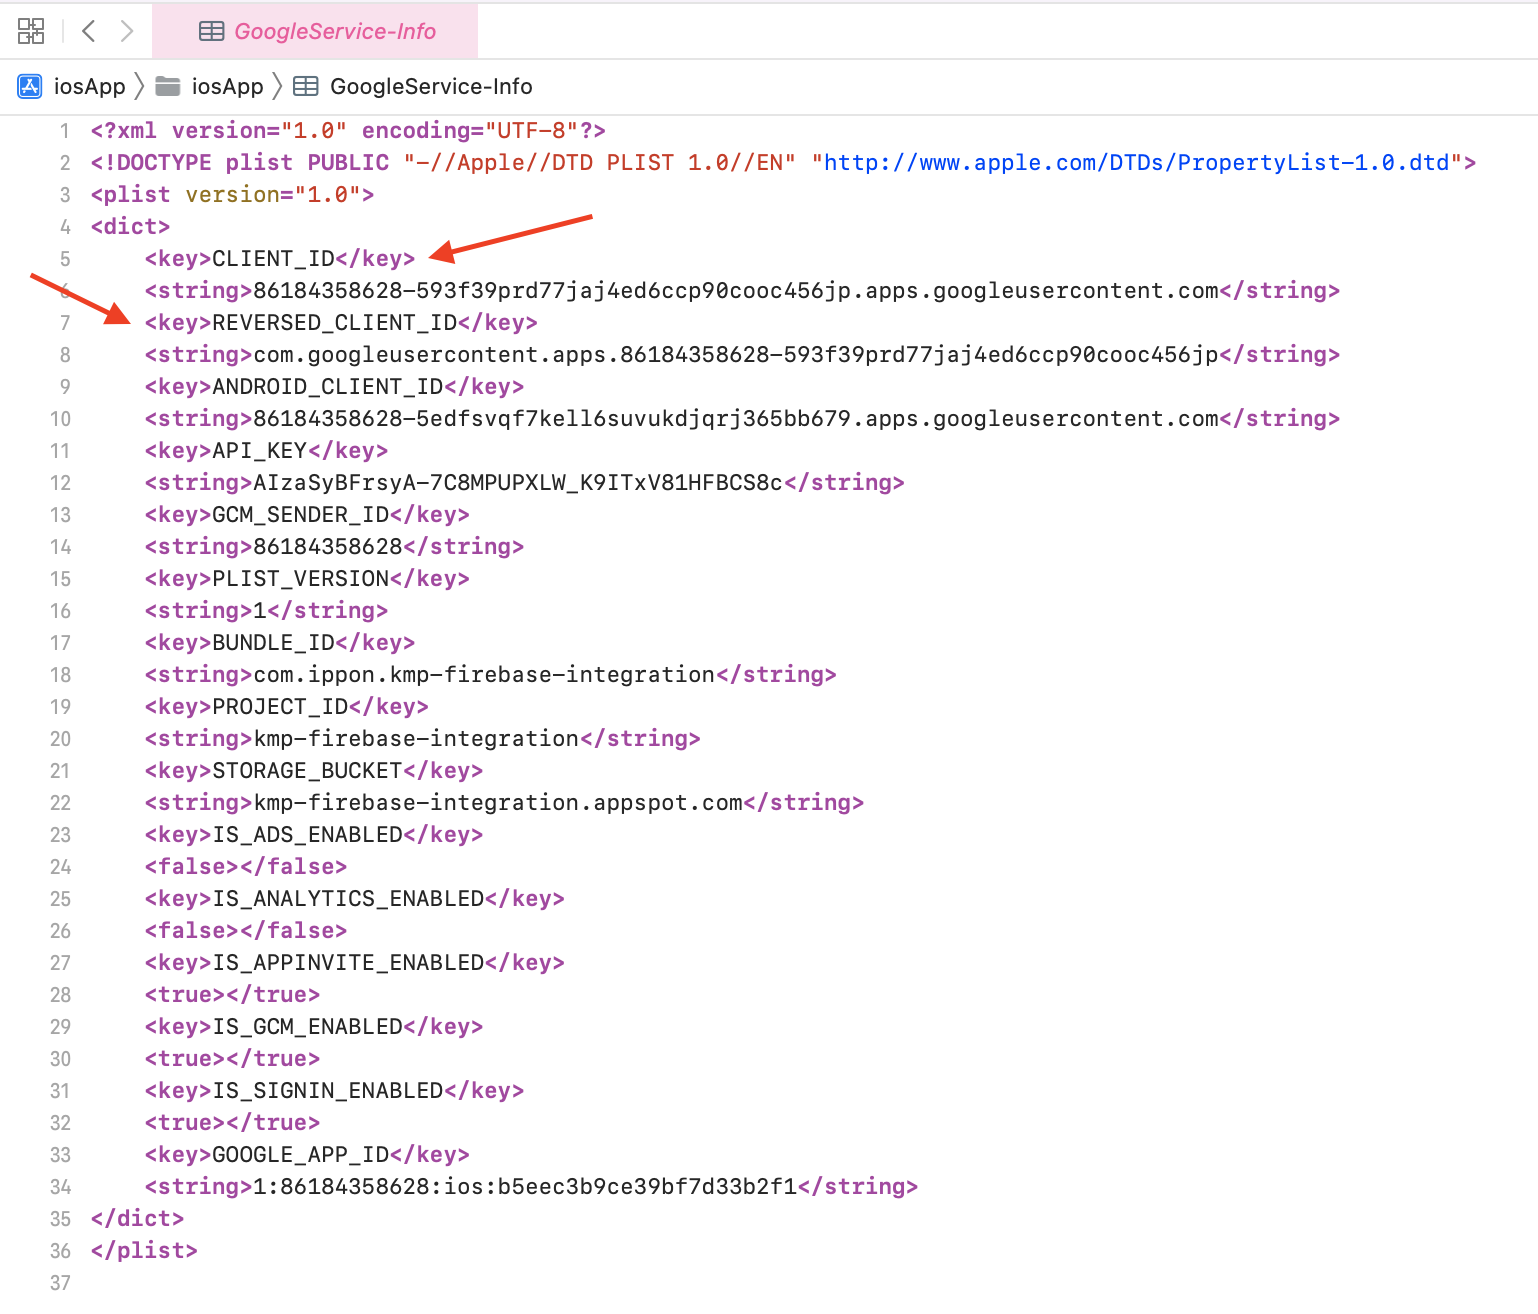 Capture d'écran du GoogleService-Info montrant le clientID et le reversedID